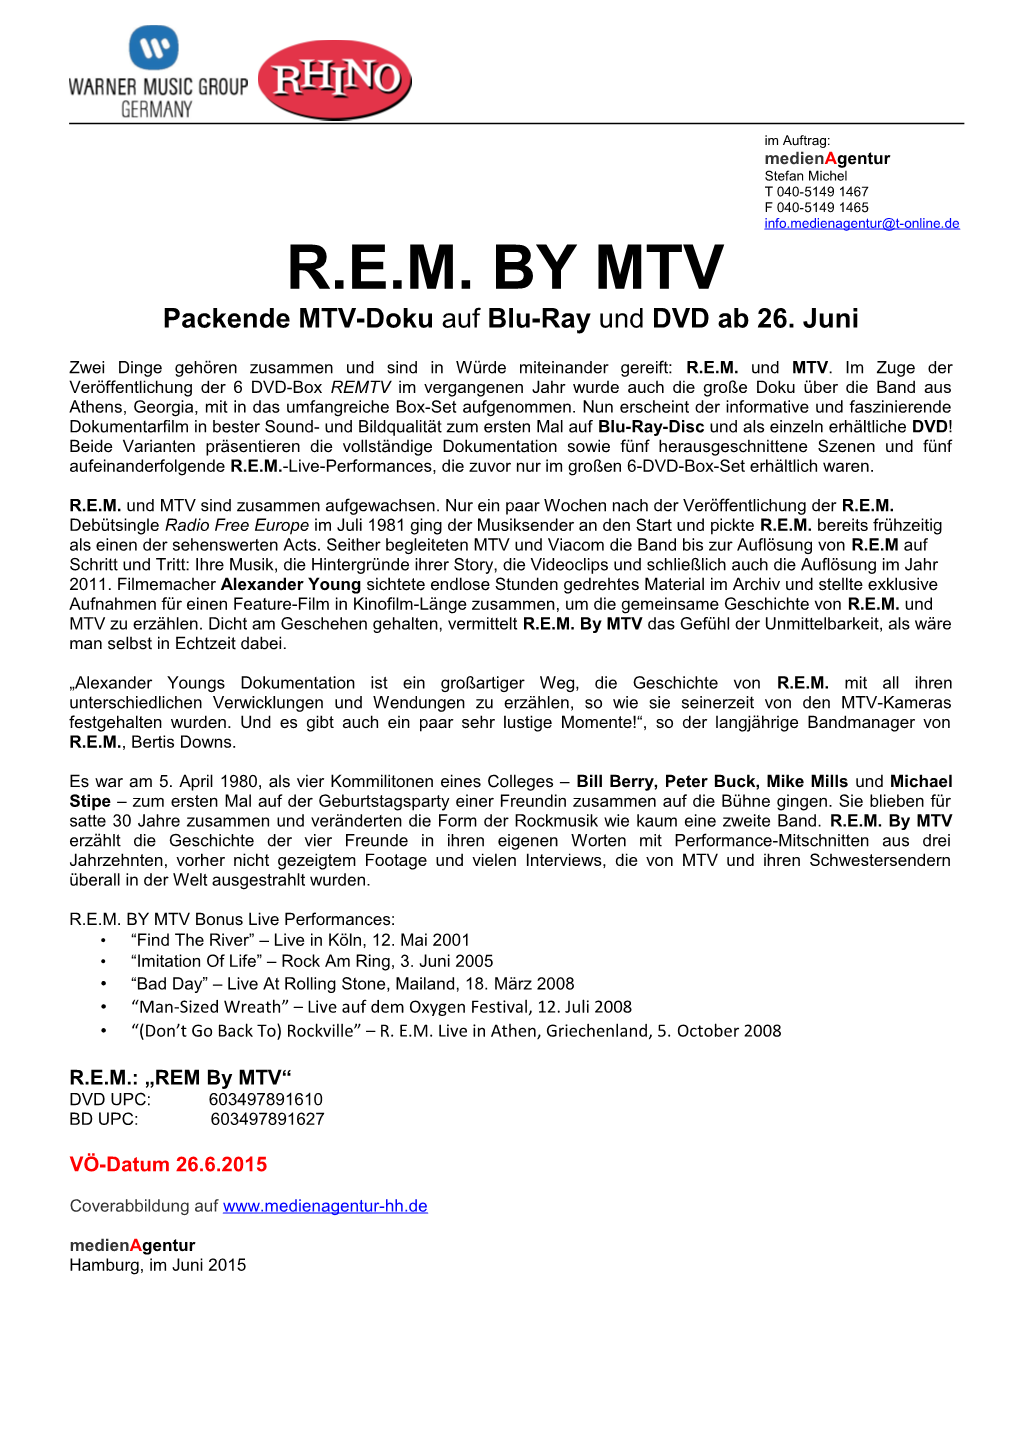 R.E.M. by MTV Packende MTV-Doku Auf Blu-Ray Und DVD Ab 26